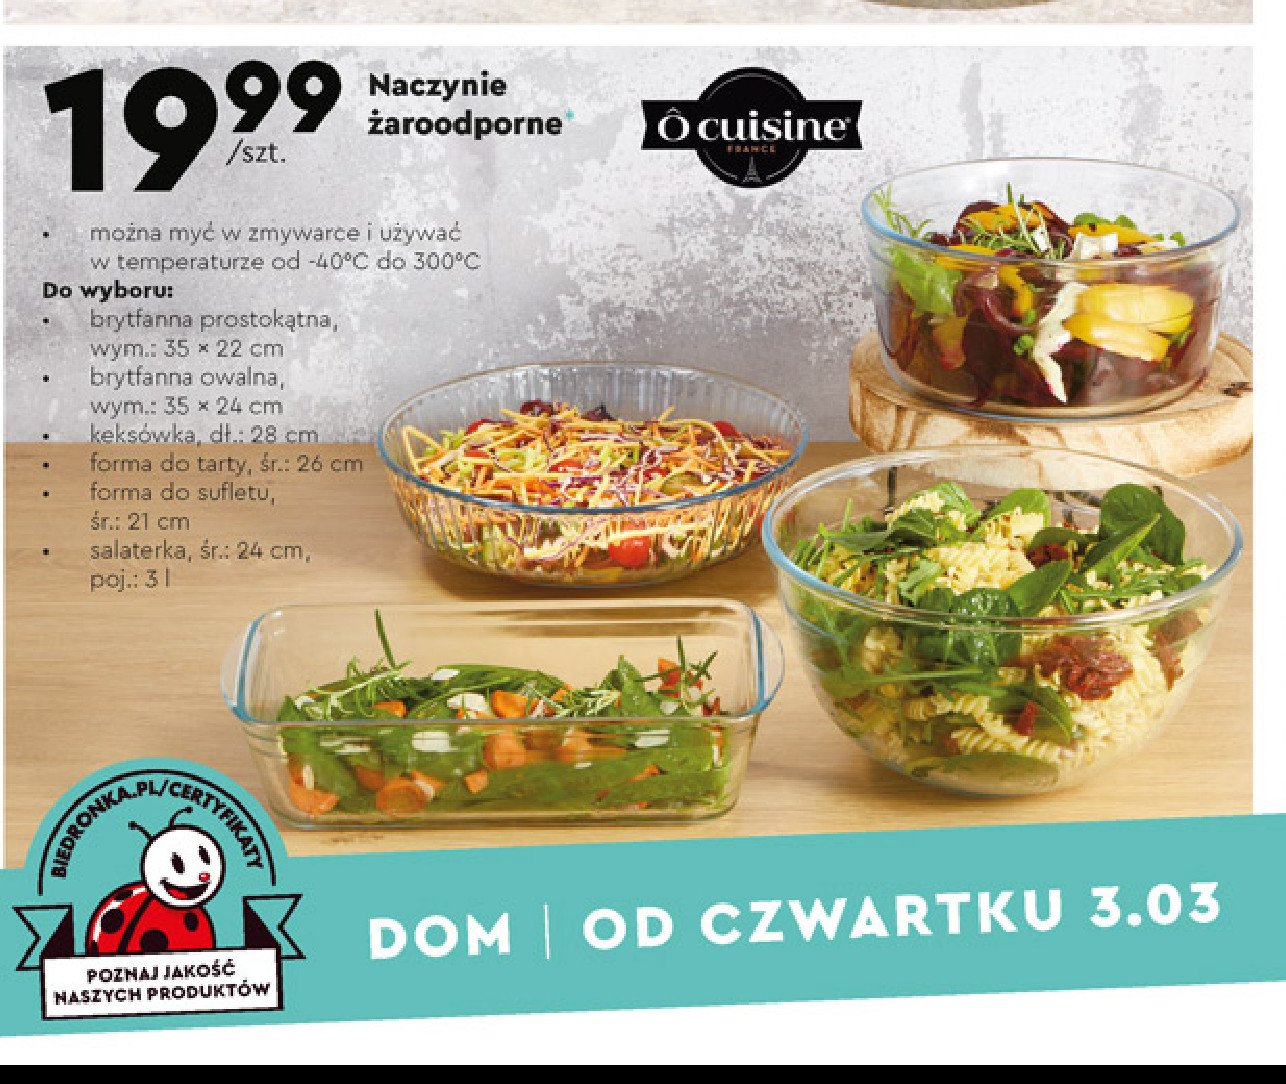 Salaterka 24 cm O cuisine promocja